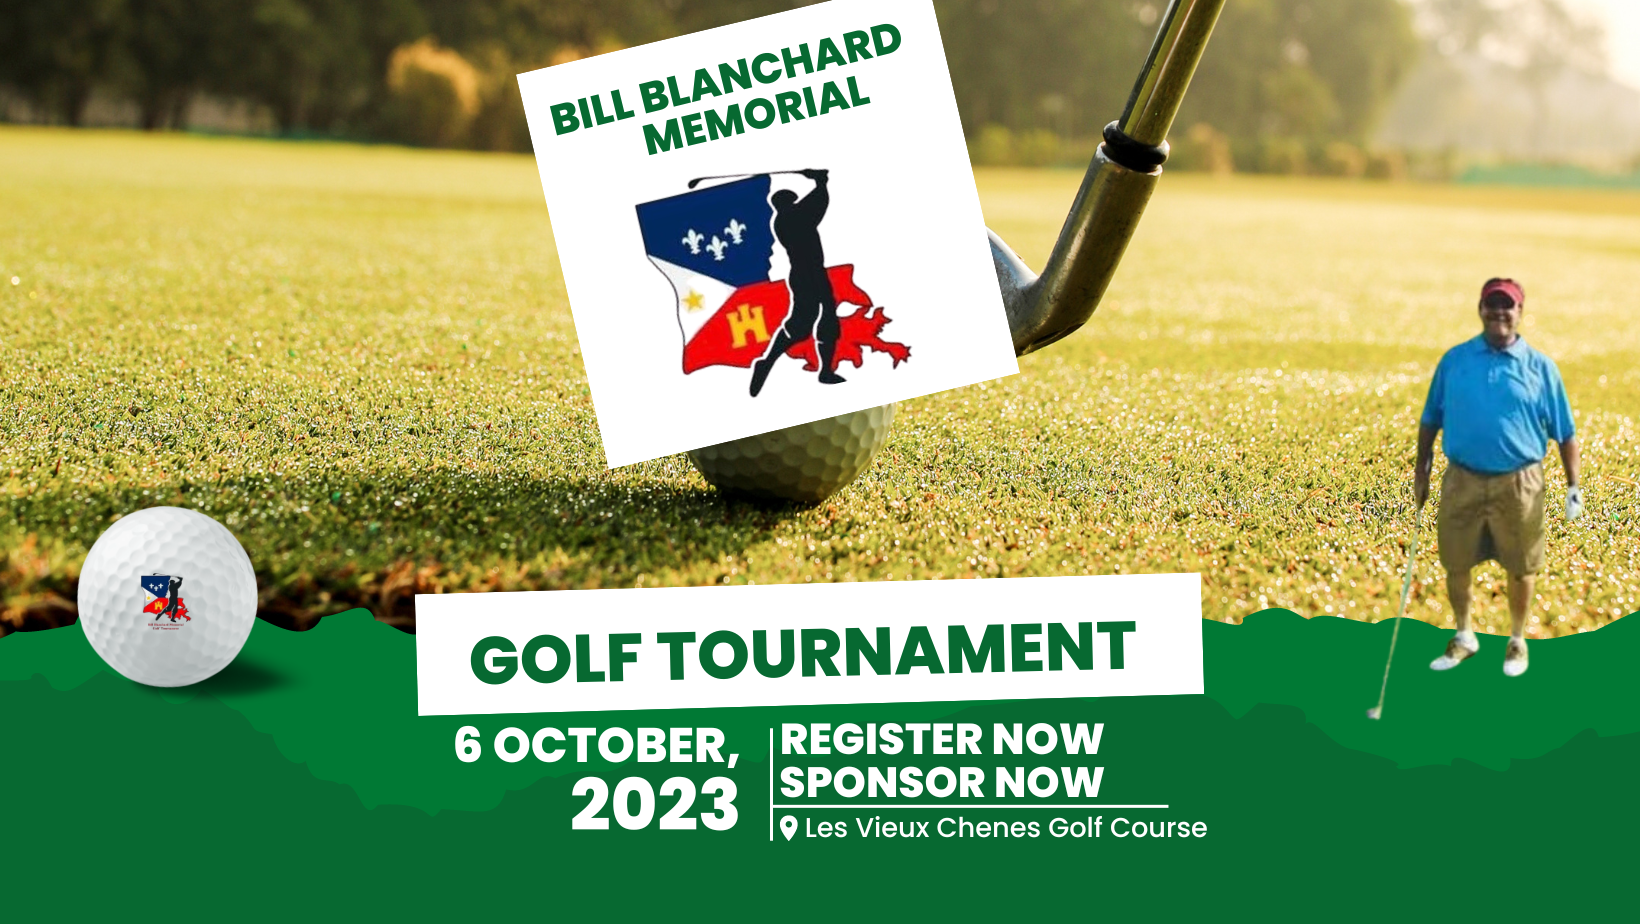 Bill Blanchard Memorial Golf Tournament